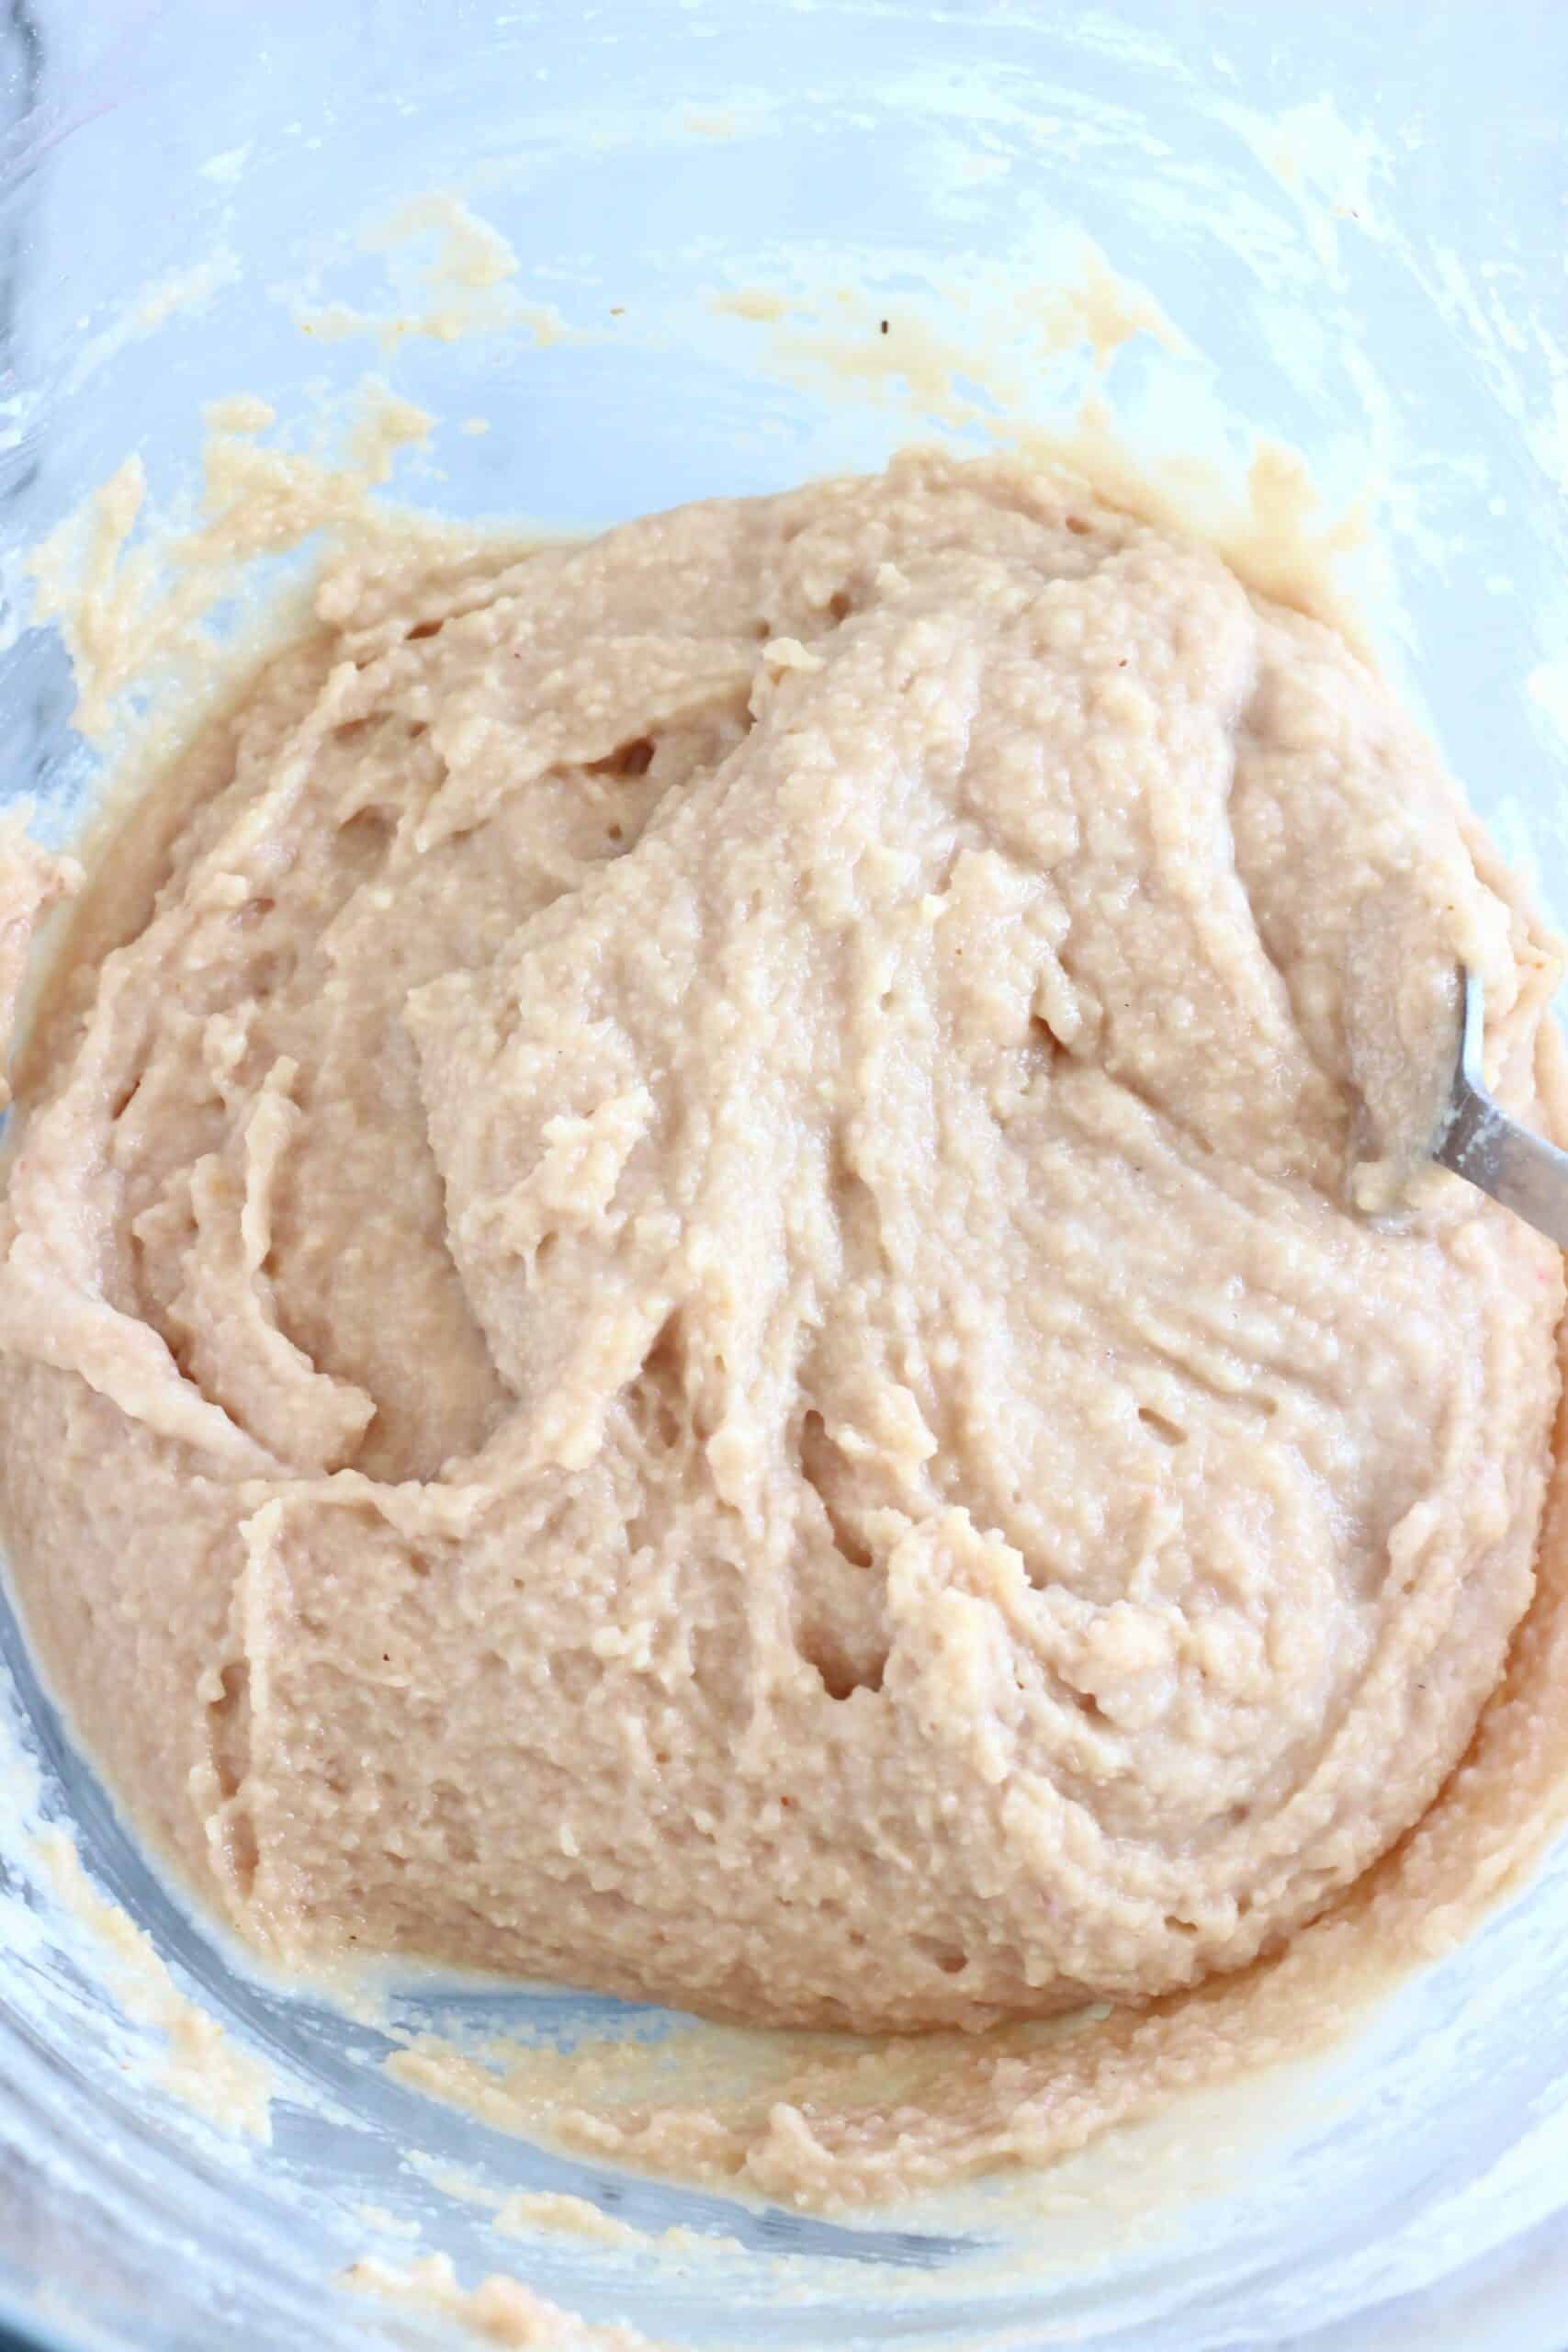 Raw gluten-free vegan blood orange cake batter in a mixing bowl